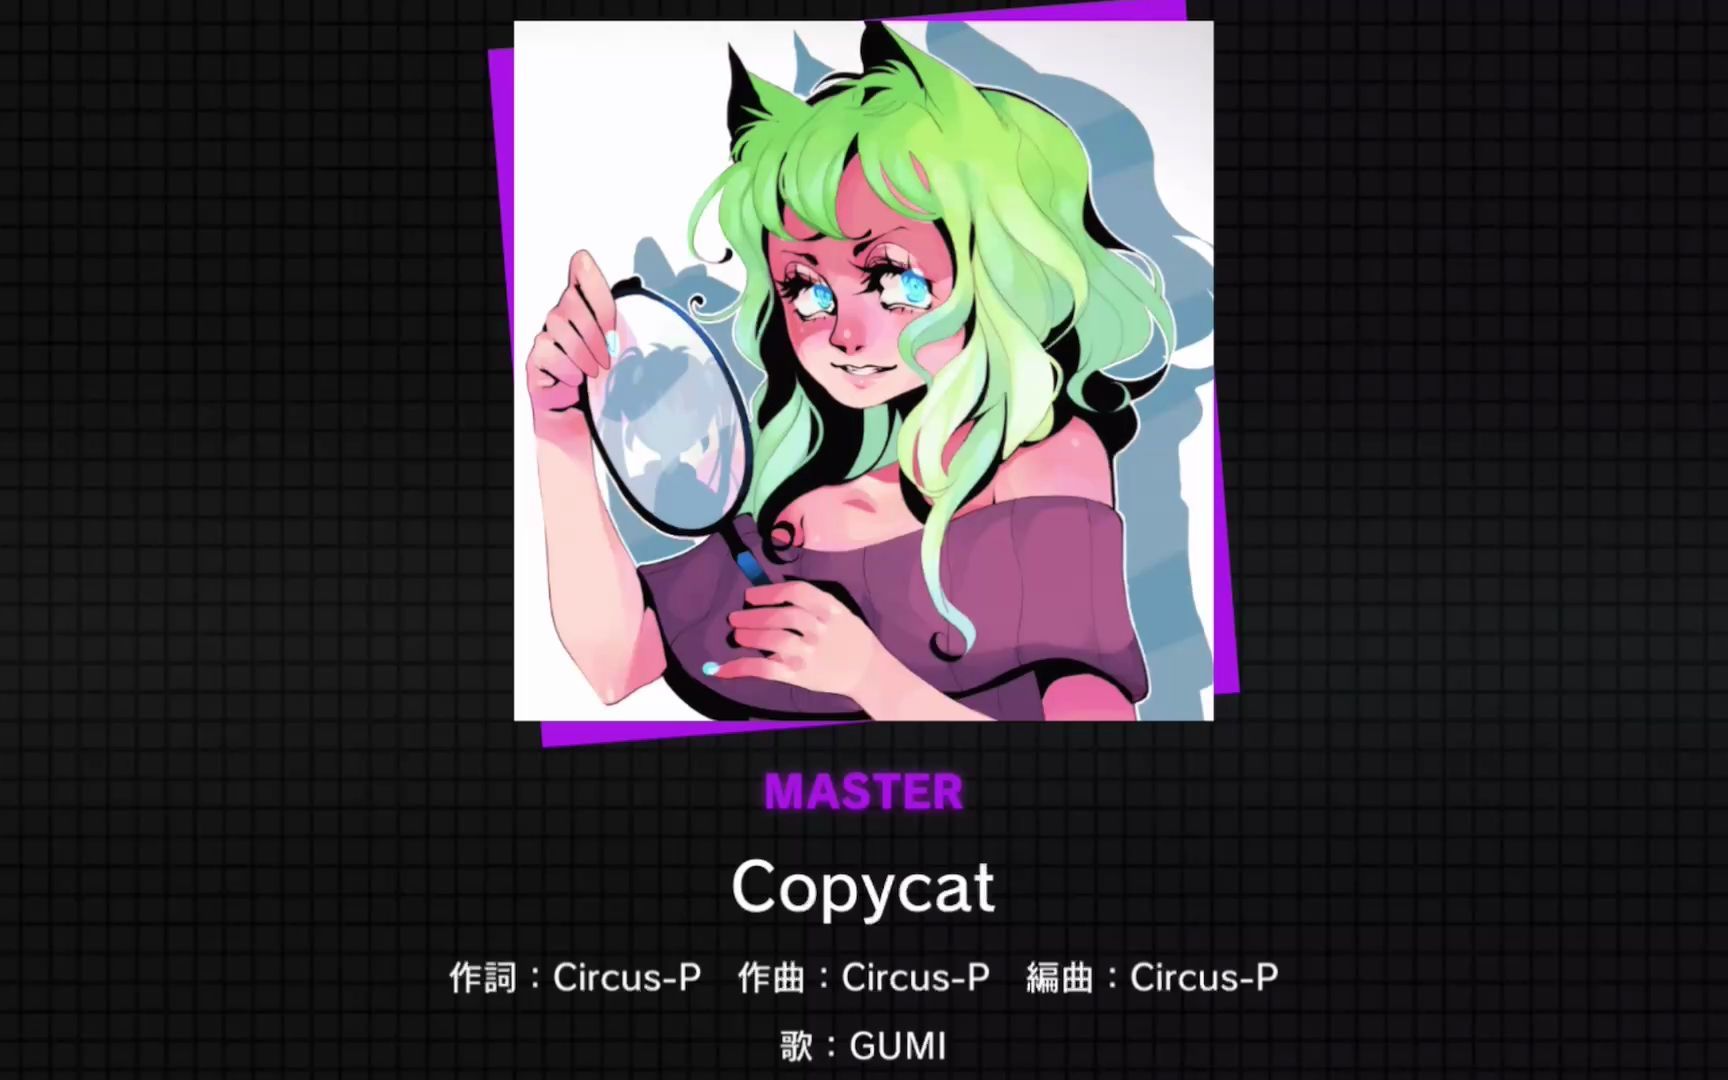 英文服独占曲目「Copycat」MASTER 27【Project SEKAI谱面确认】